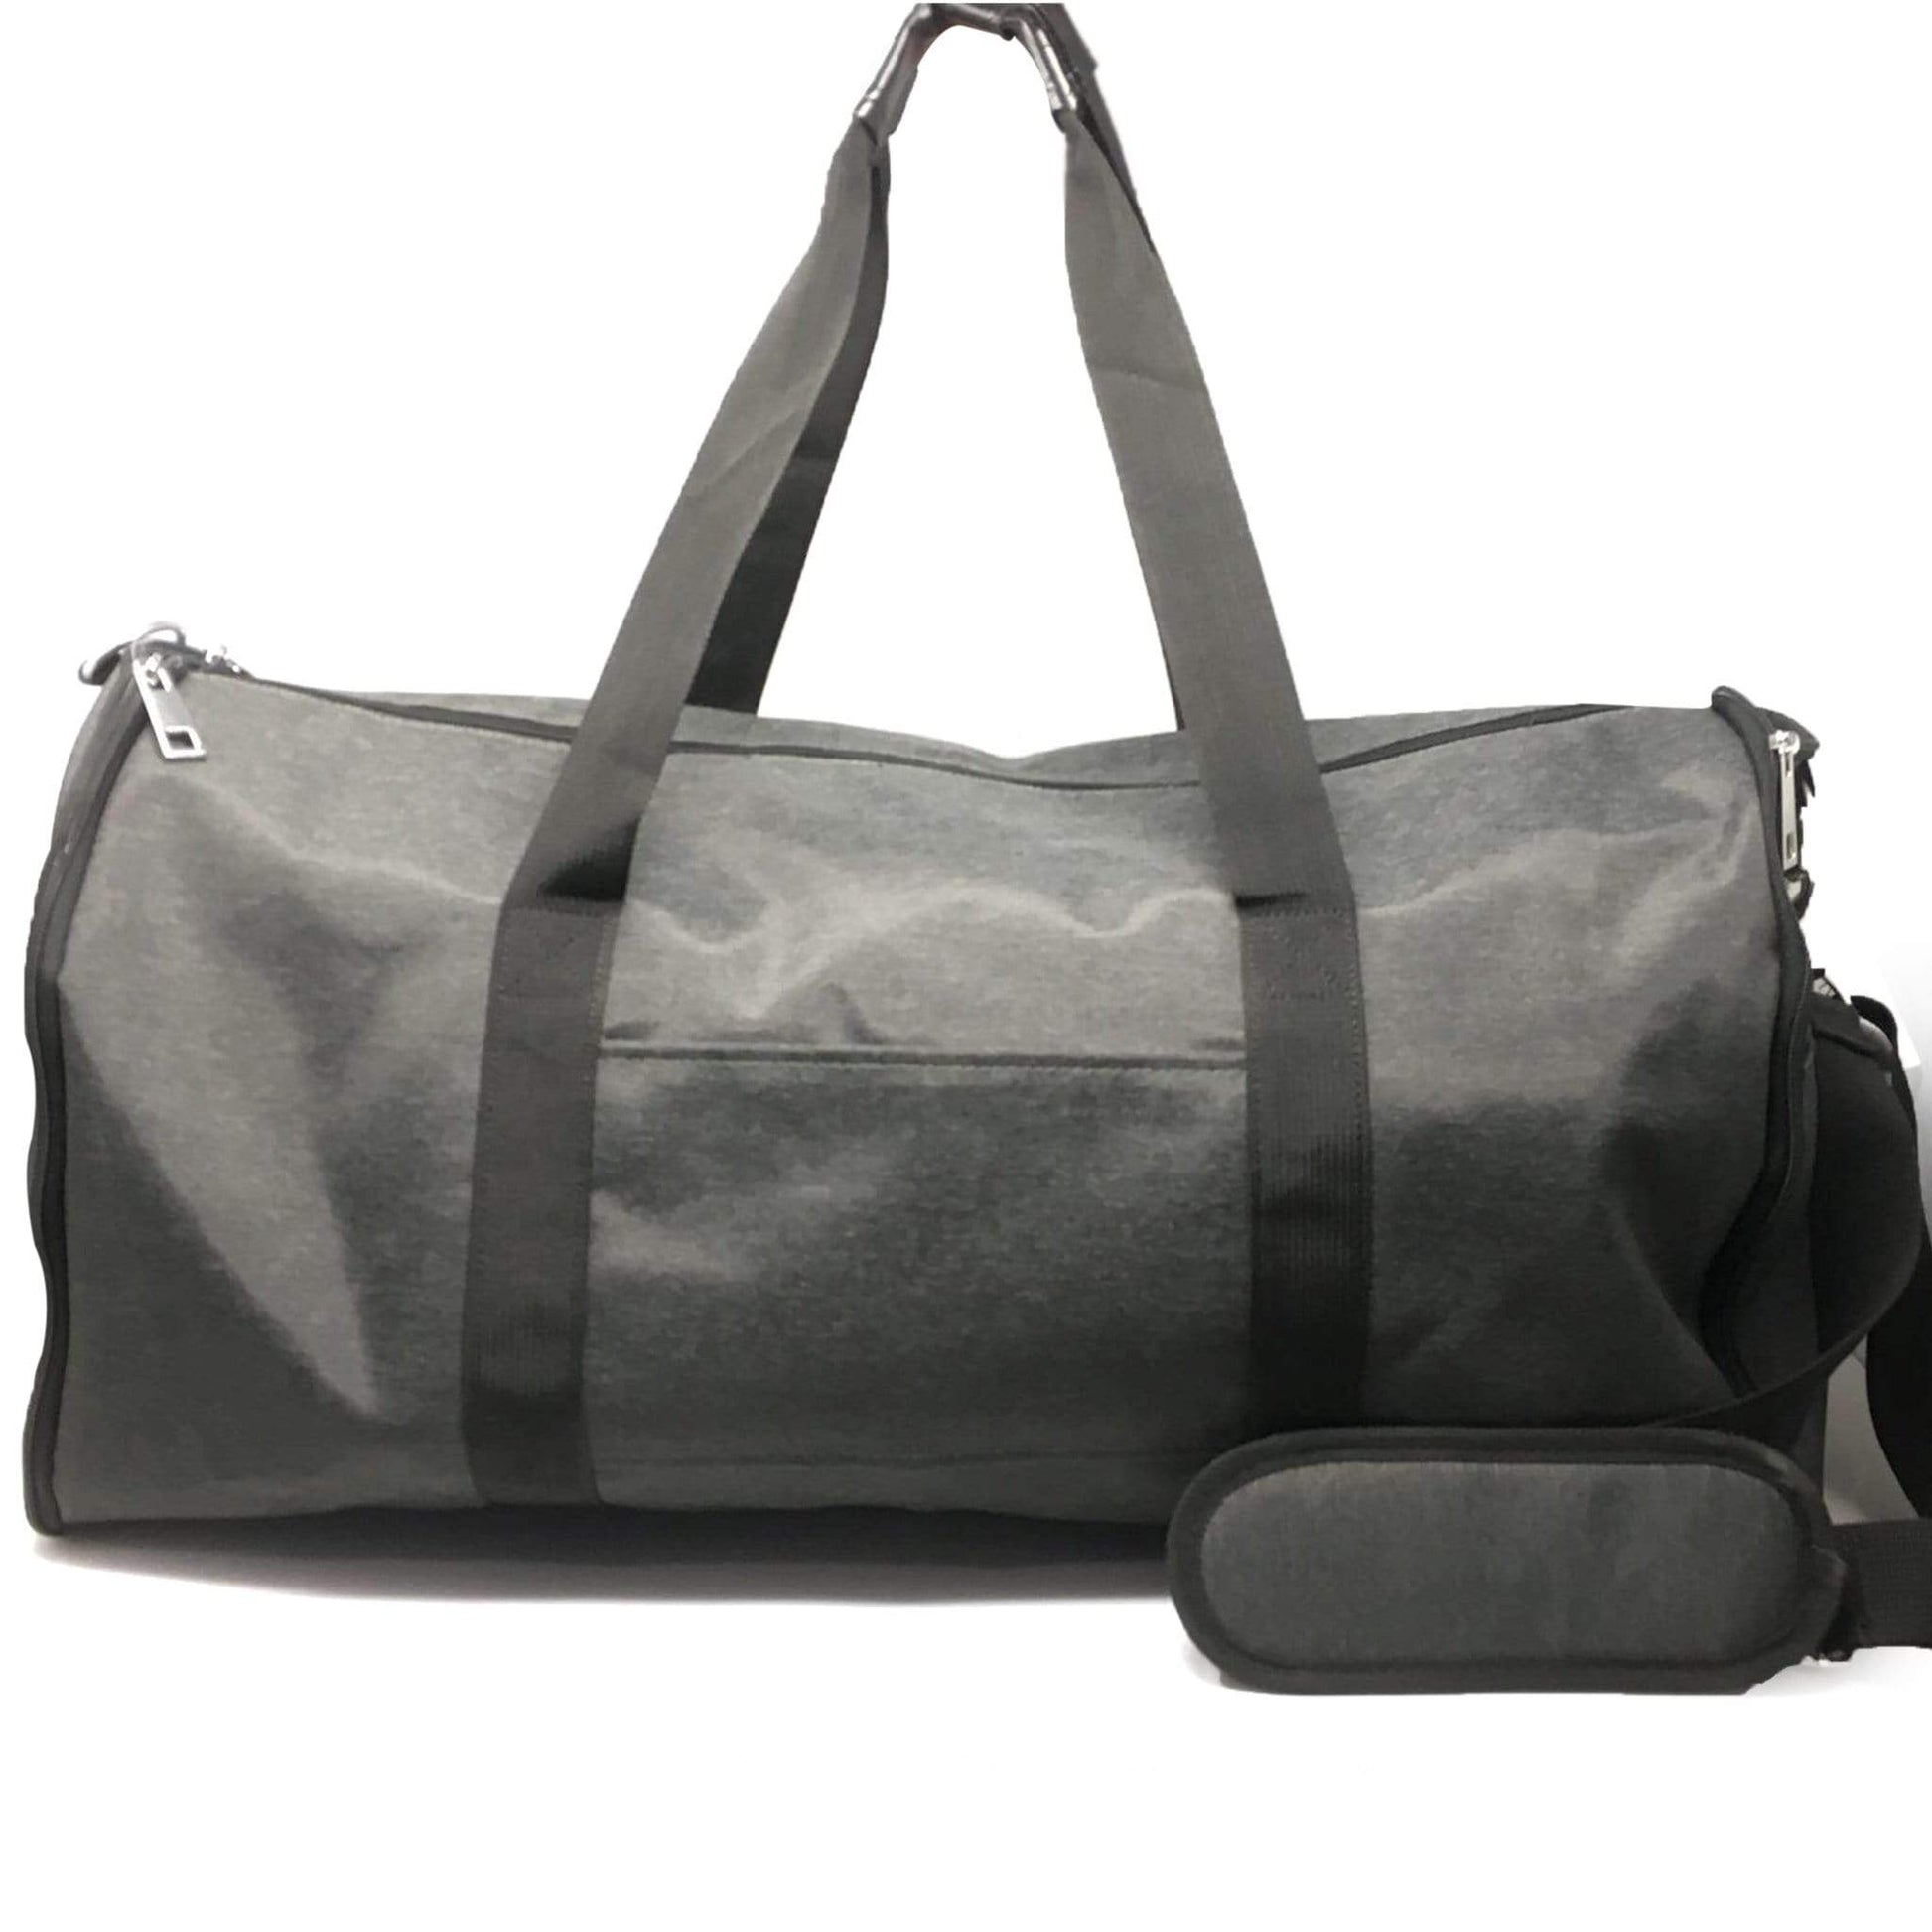 Duchamp Handbags Hand Bag/ Suit case